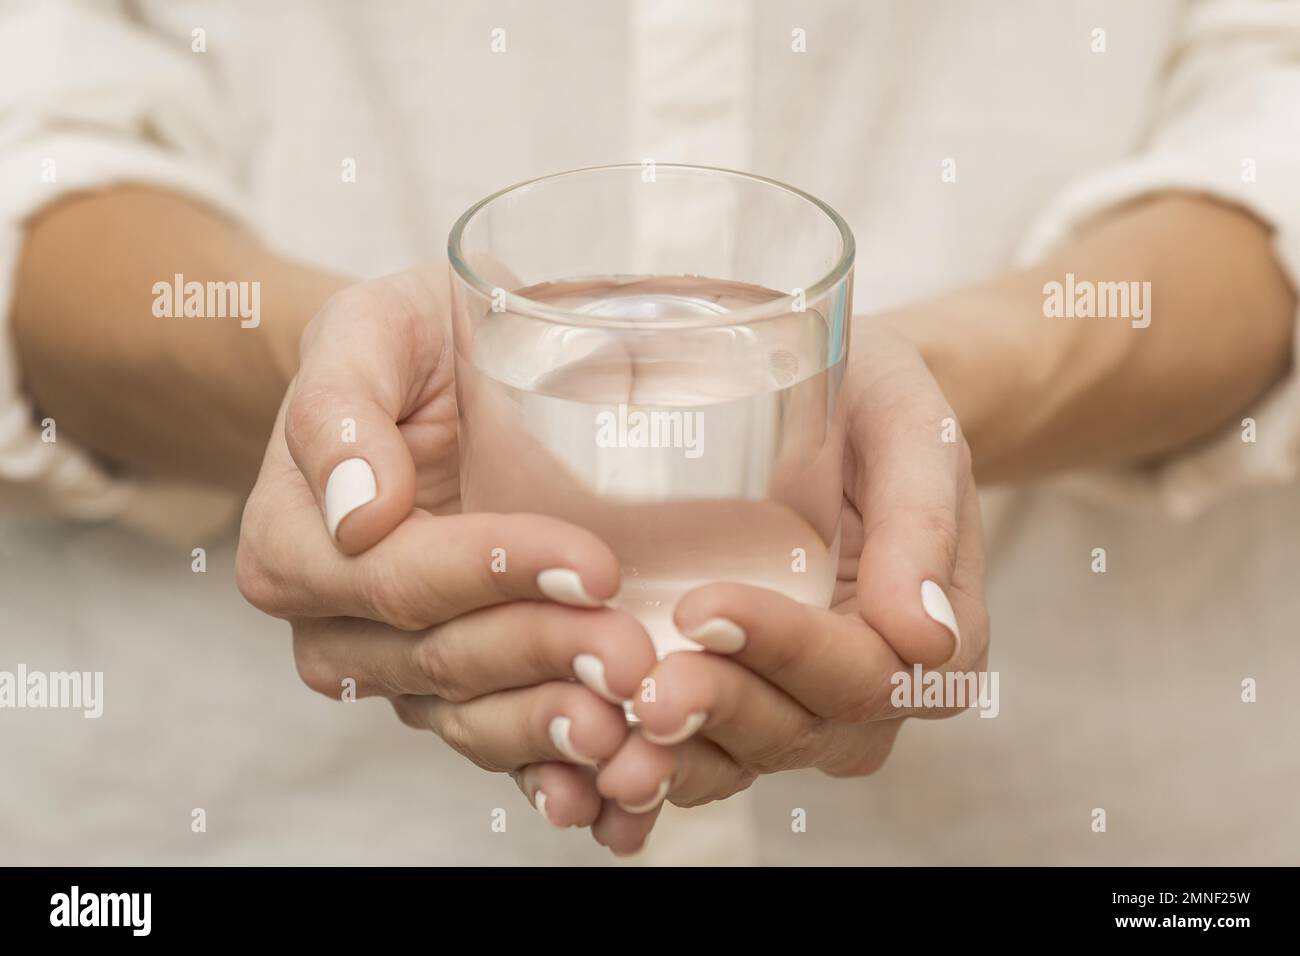 Frau mit mit Wasser gefülltem Glas. Auflösung und hochwertige schöne Fotos Stockfoto